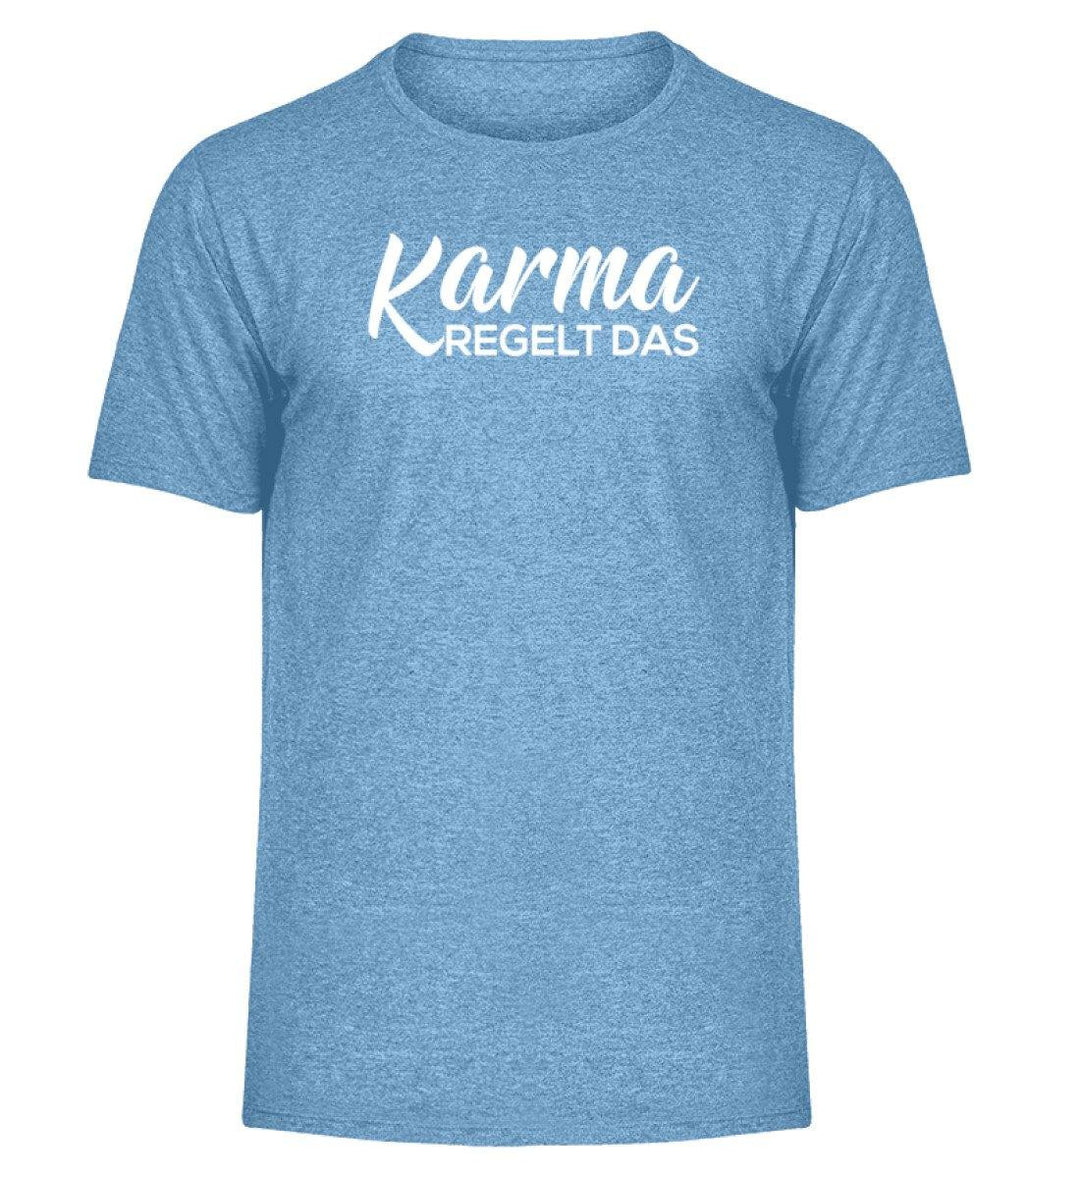 Karma regelt das-  Words on Shirts - PR  - Herren Melange Shirt - Words on Shirts Sag es mit dem Mittelfinger Shirts Hoodies Sweatshirt Taschen Gymsack Spruch Sprüche Statement